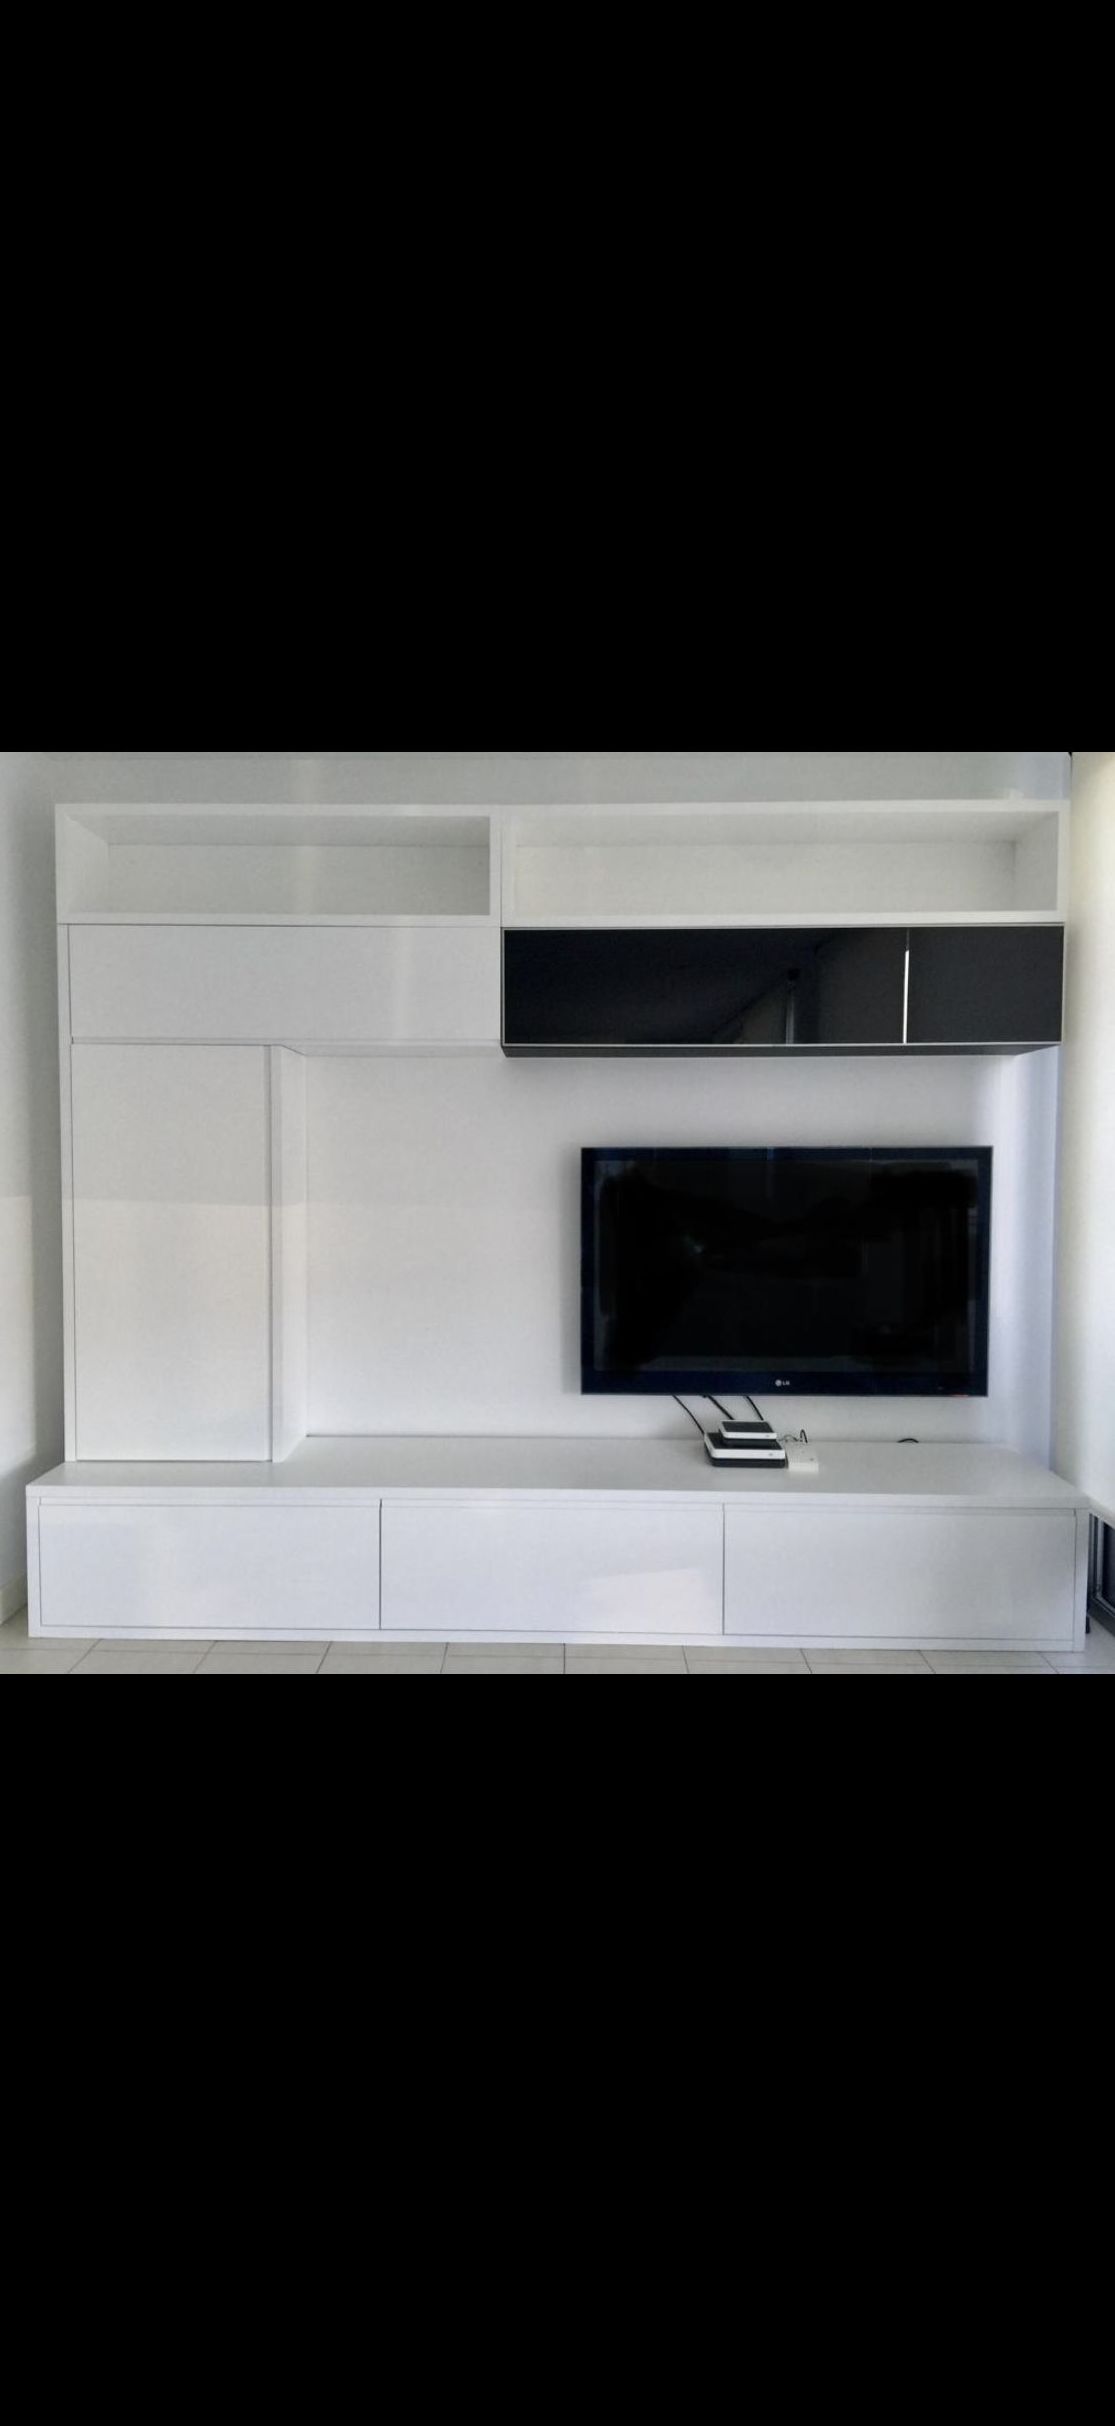 Mueble salón realizado en DM hidrofugo,lacado en color blanco